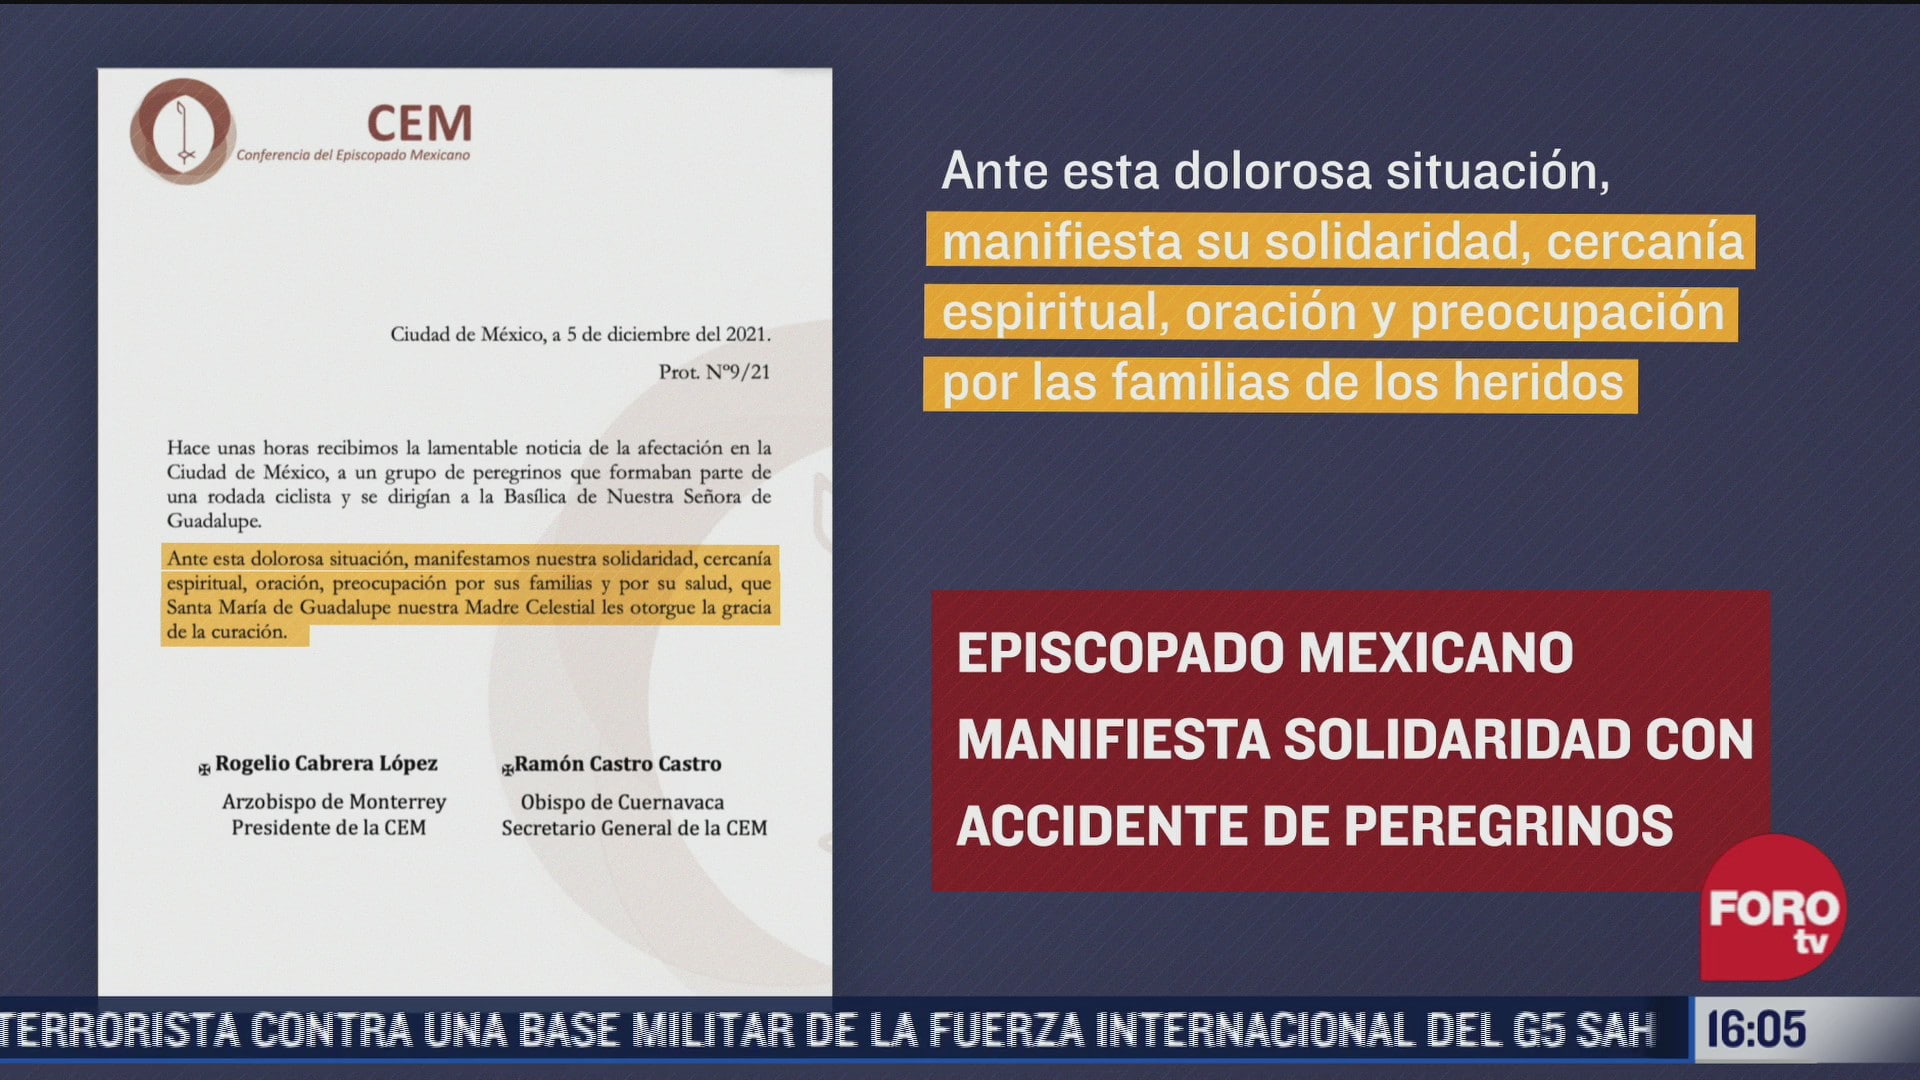 episcopado mexicano lamenta accidente de ciclistas peregrinos en cdmx